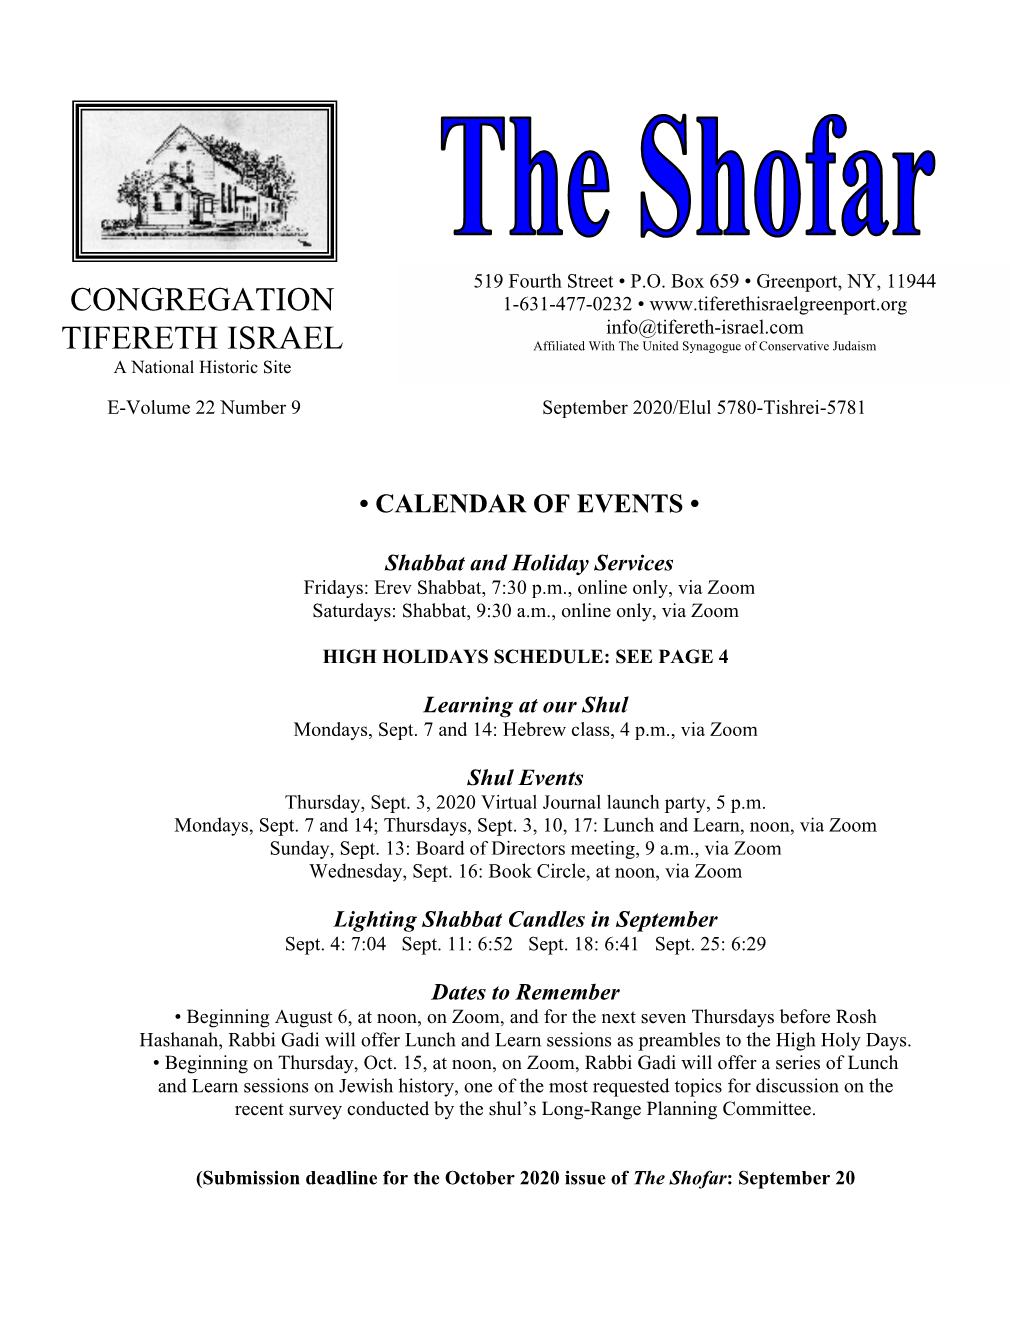 Shofar: September 20 from the Rabbi…